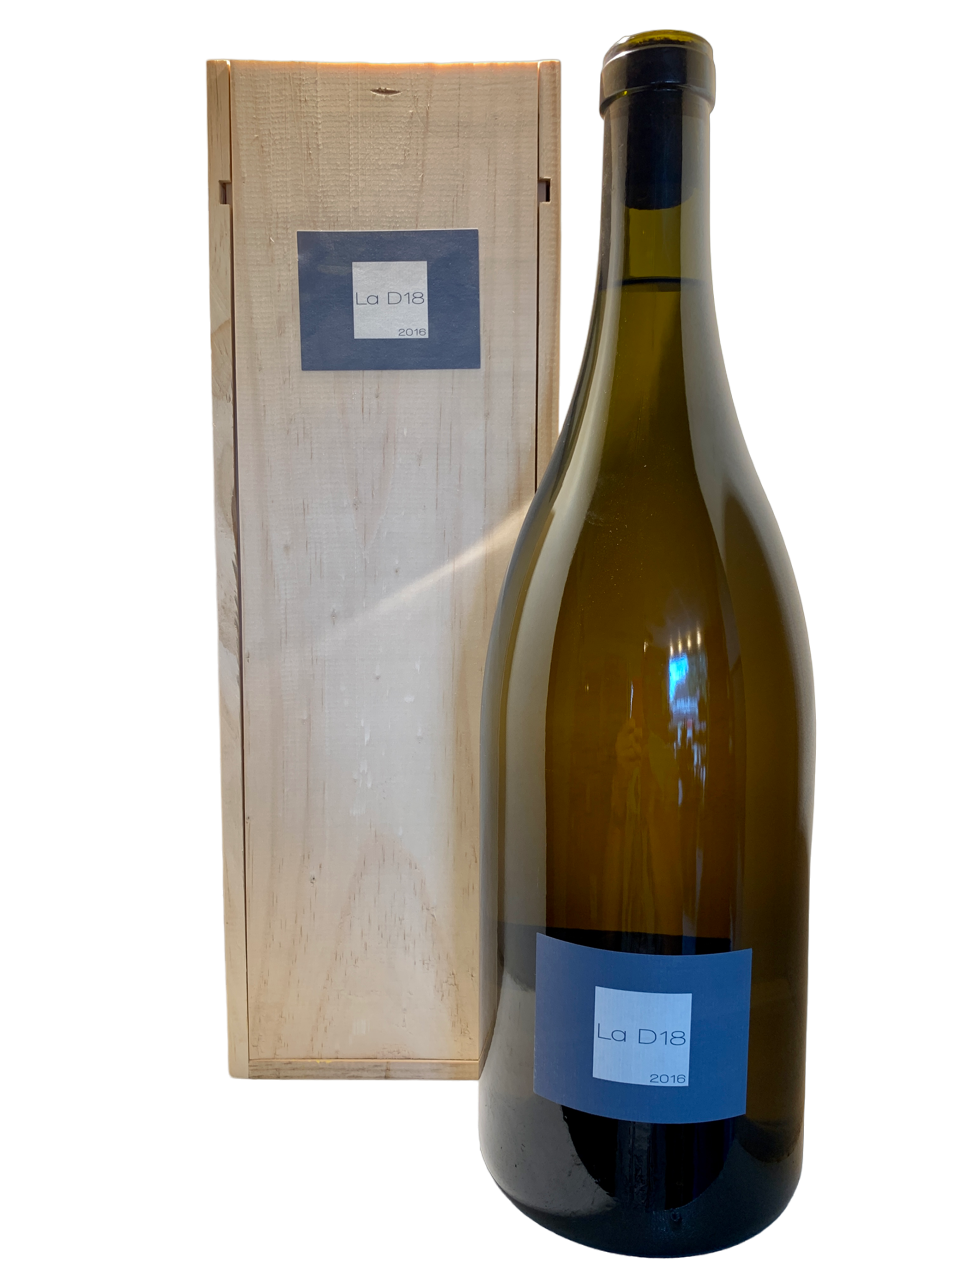 Lnaguedoc roussillon domaine olivier pithon vin biodynamie organic wine igp côtes catalanes la D18 jéroboam blanc